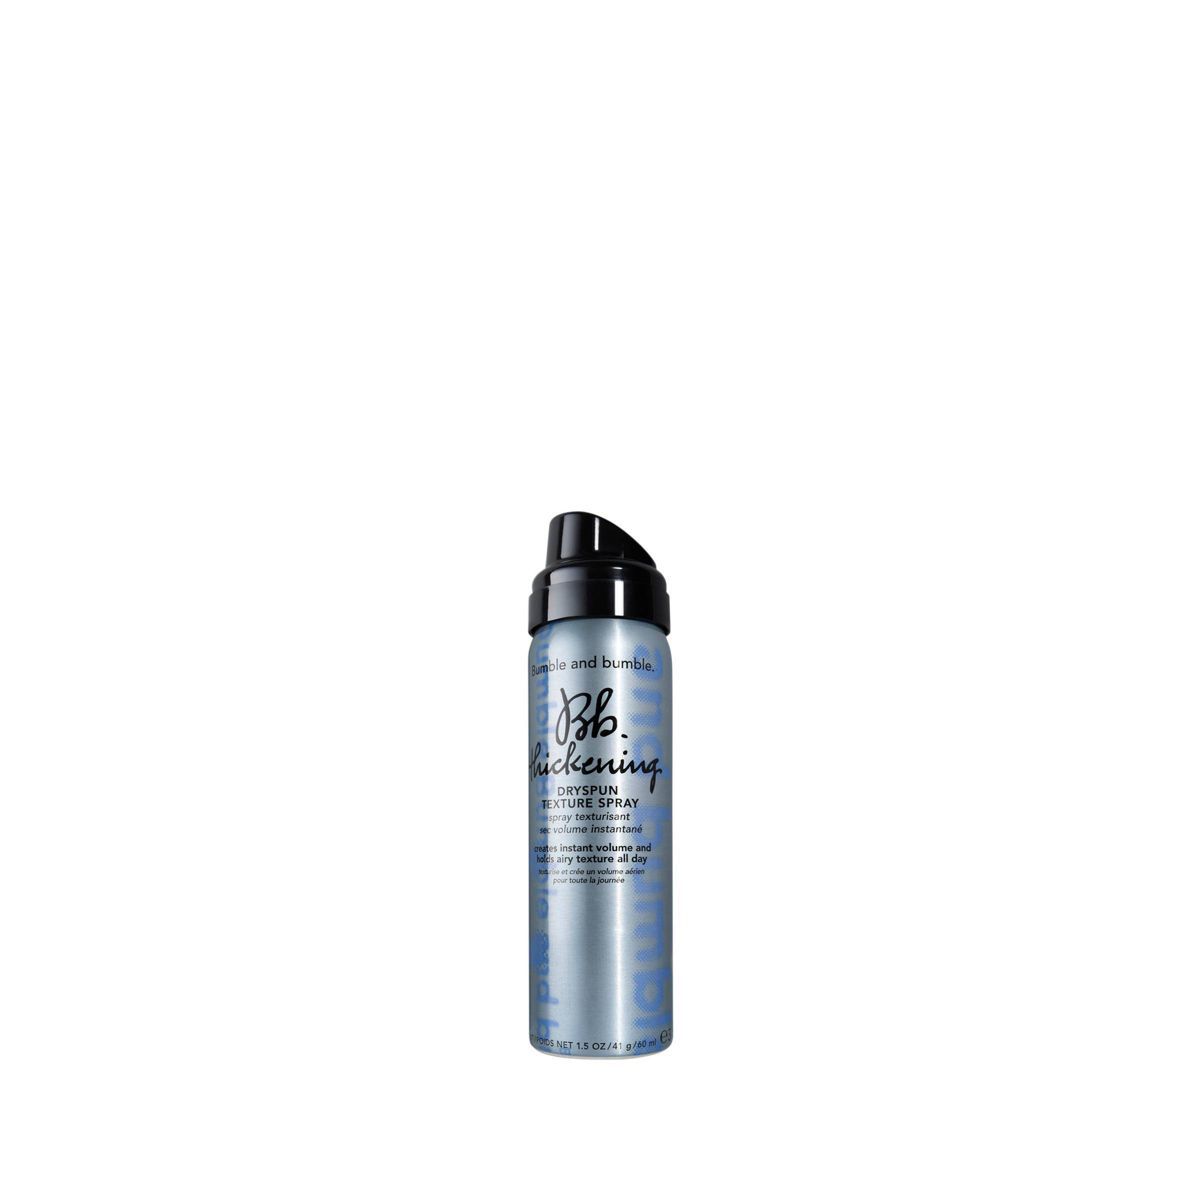 Bumble and Bumble Dryspun Texture Spray - 2 fl oz - Ulta Beauty | Target